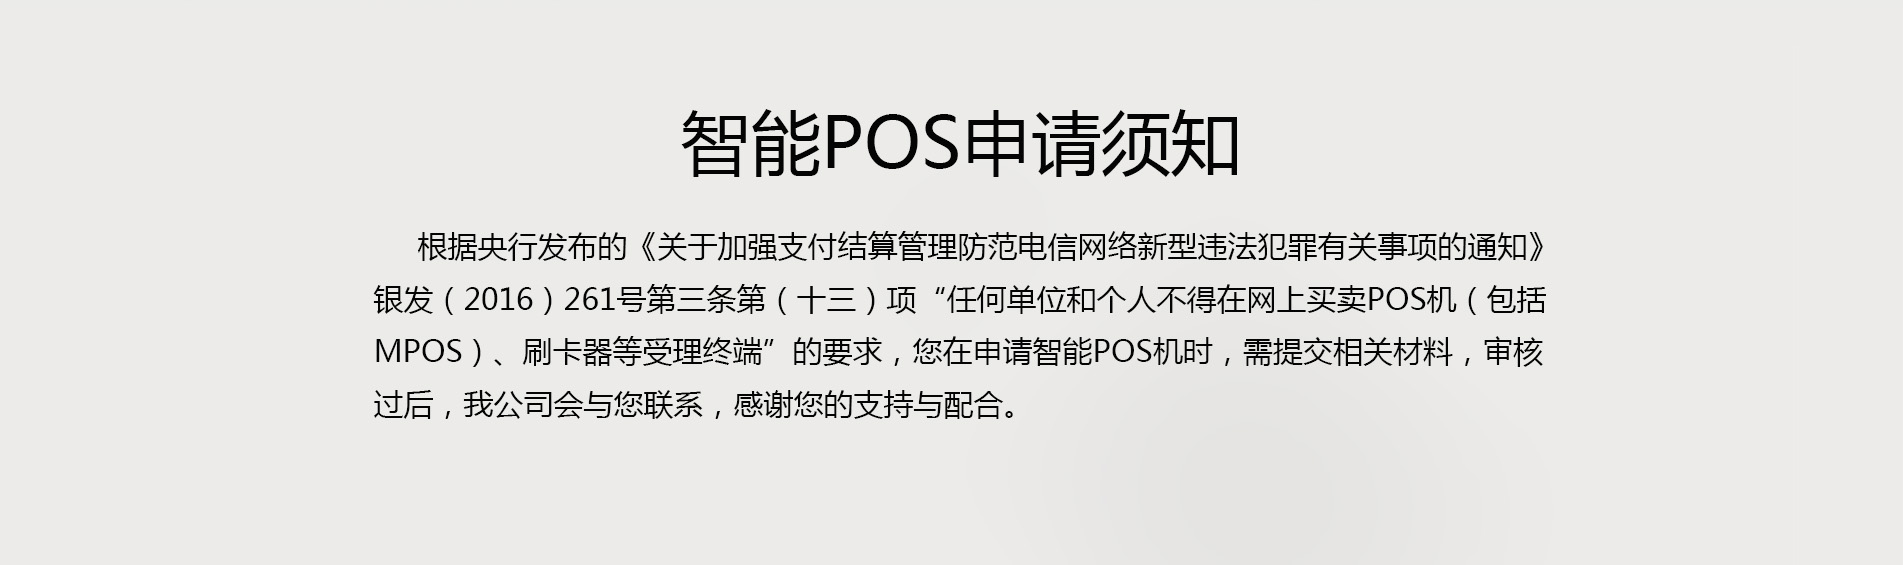 传统POS机支持微信支付宝刷卡